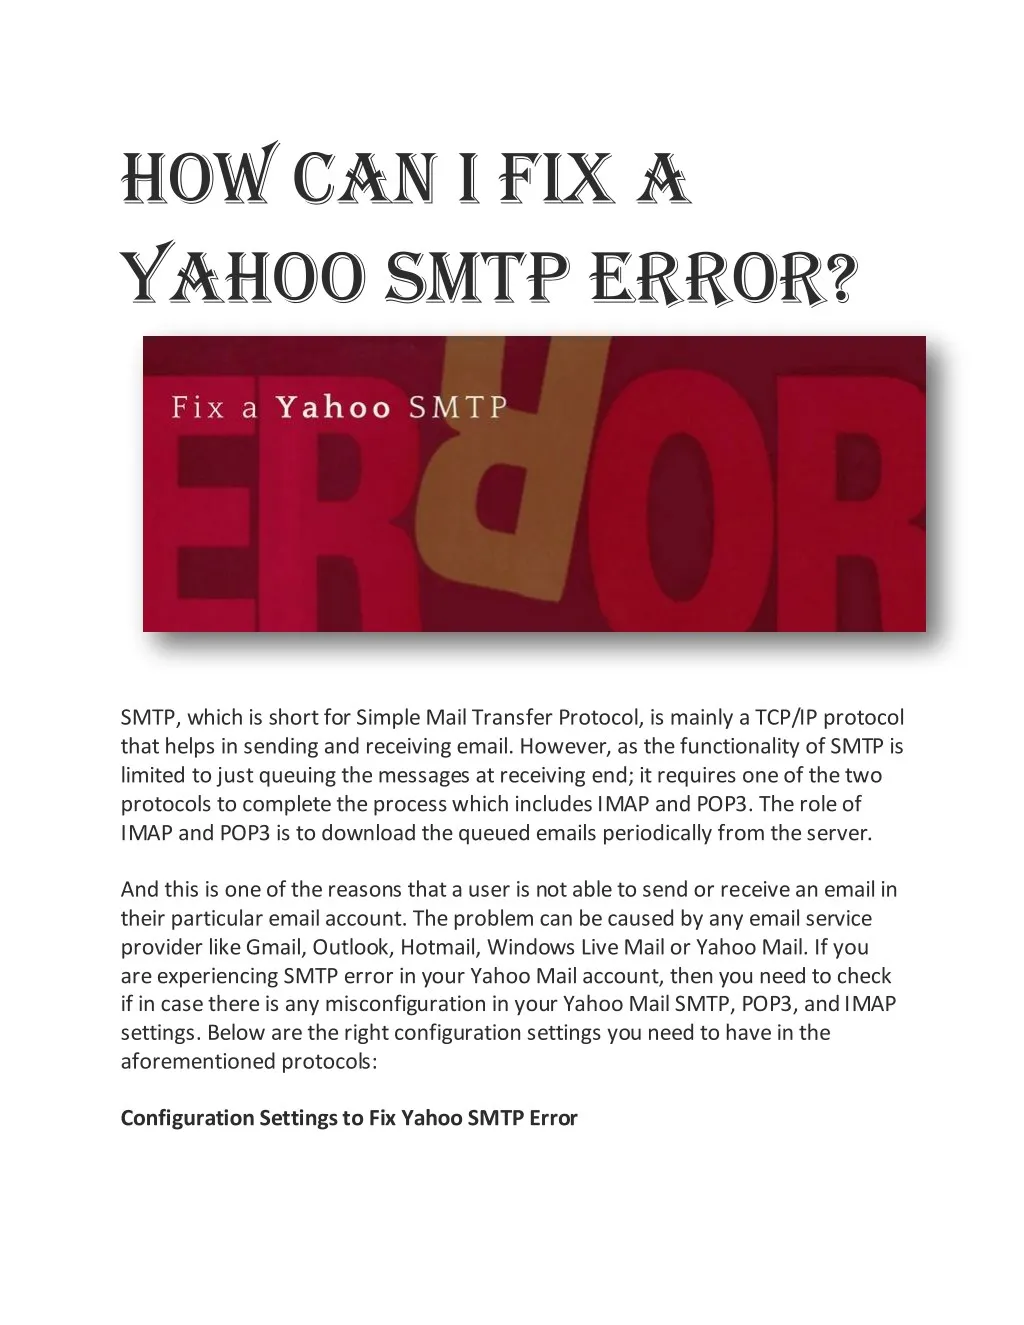 how can i fix a yahoo smtp error